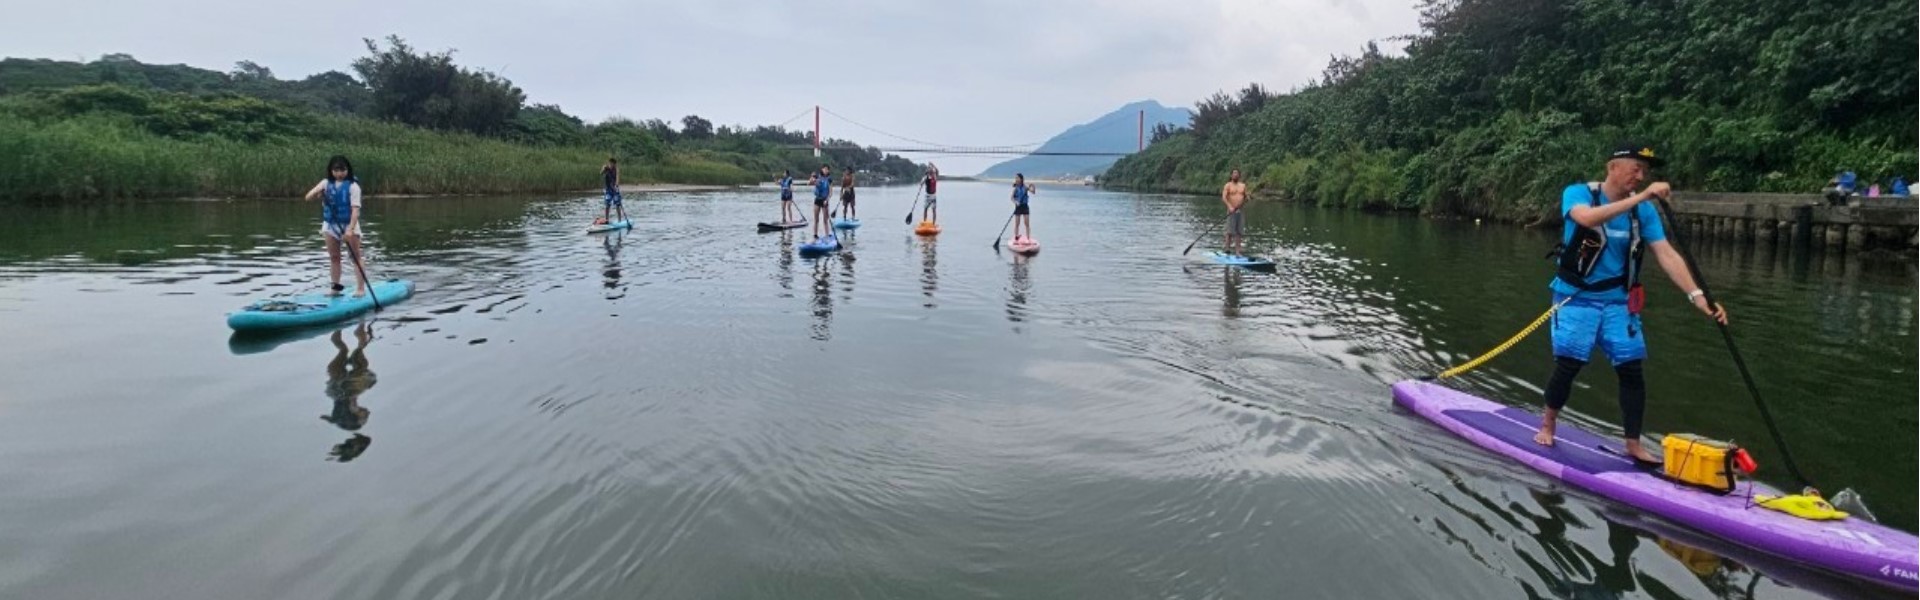 《兩板成行》挑戰東北角刺激亞馬遜SUP之旅 - 福隆雙溪河